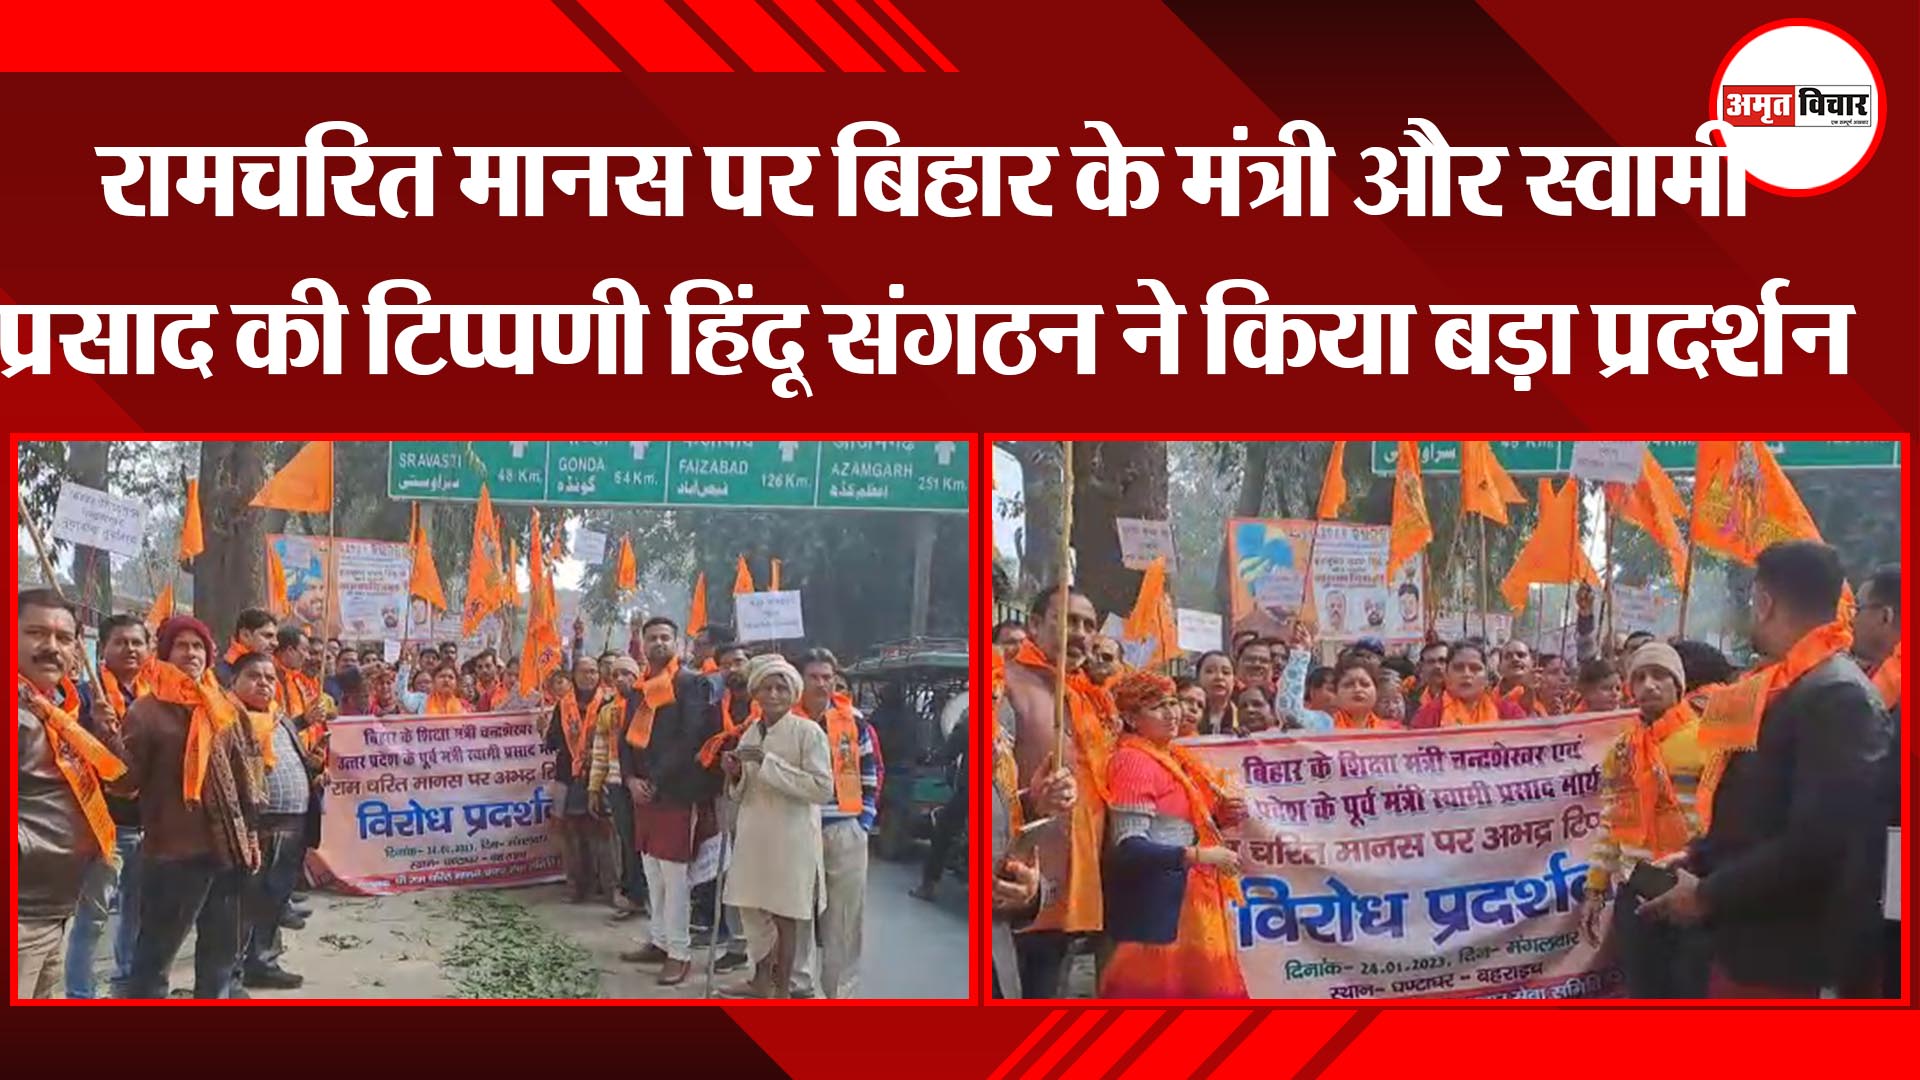 बहराइच: रामचरित मानस पर बिहार के मंत्री और स्वामी प्रसाद की टिप्पणी हिंदू संगठन ने किया बड़ा प्रदर्शन 